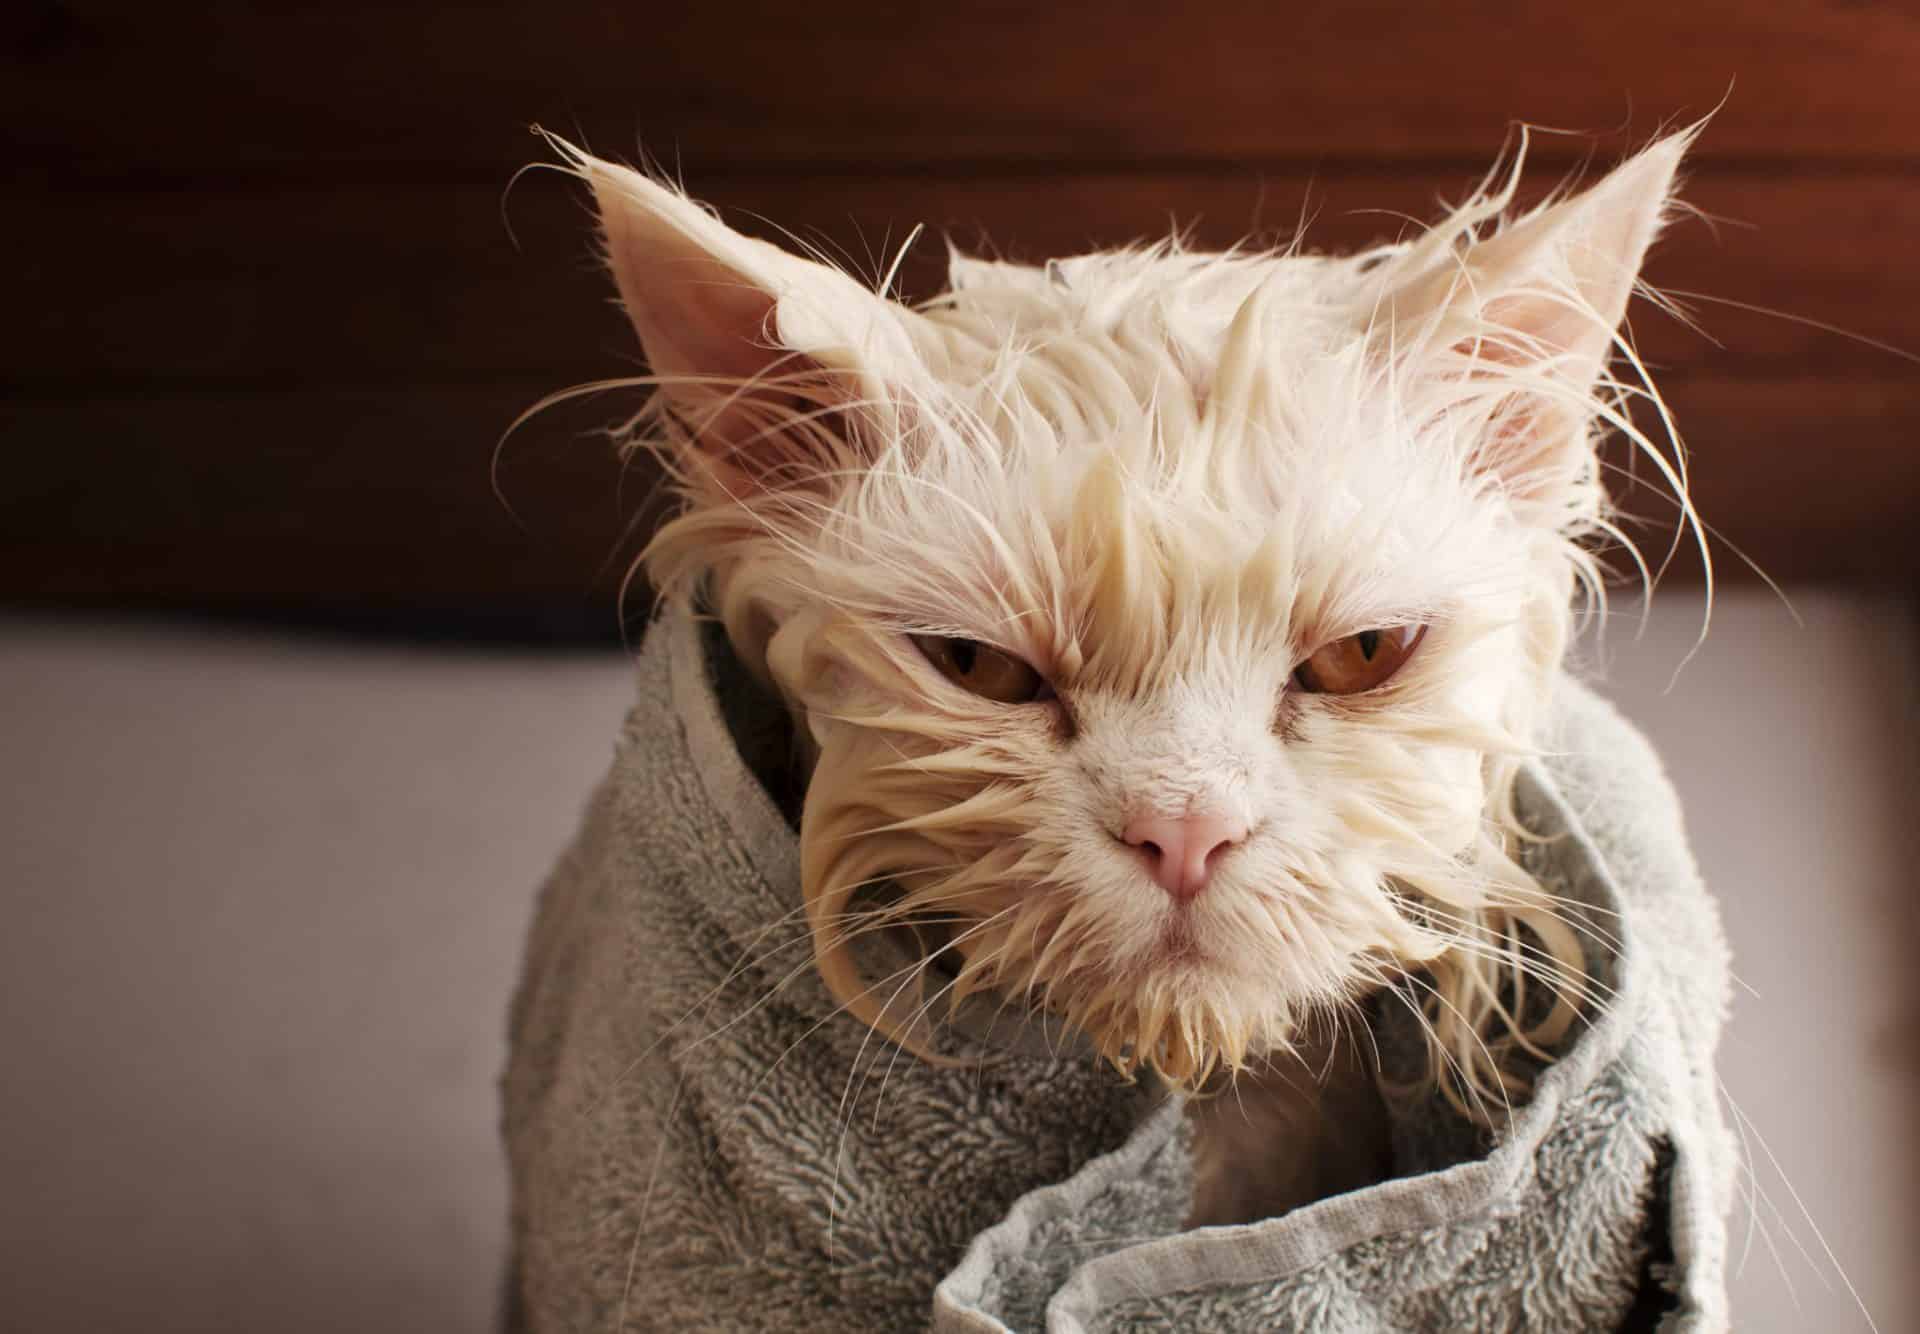 Bath a cat